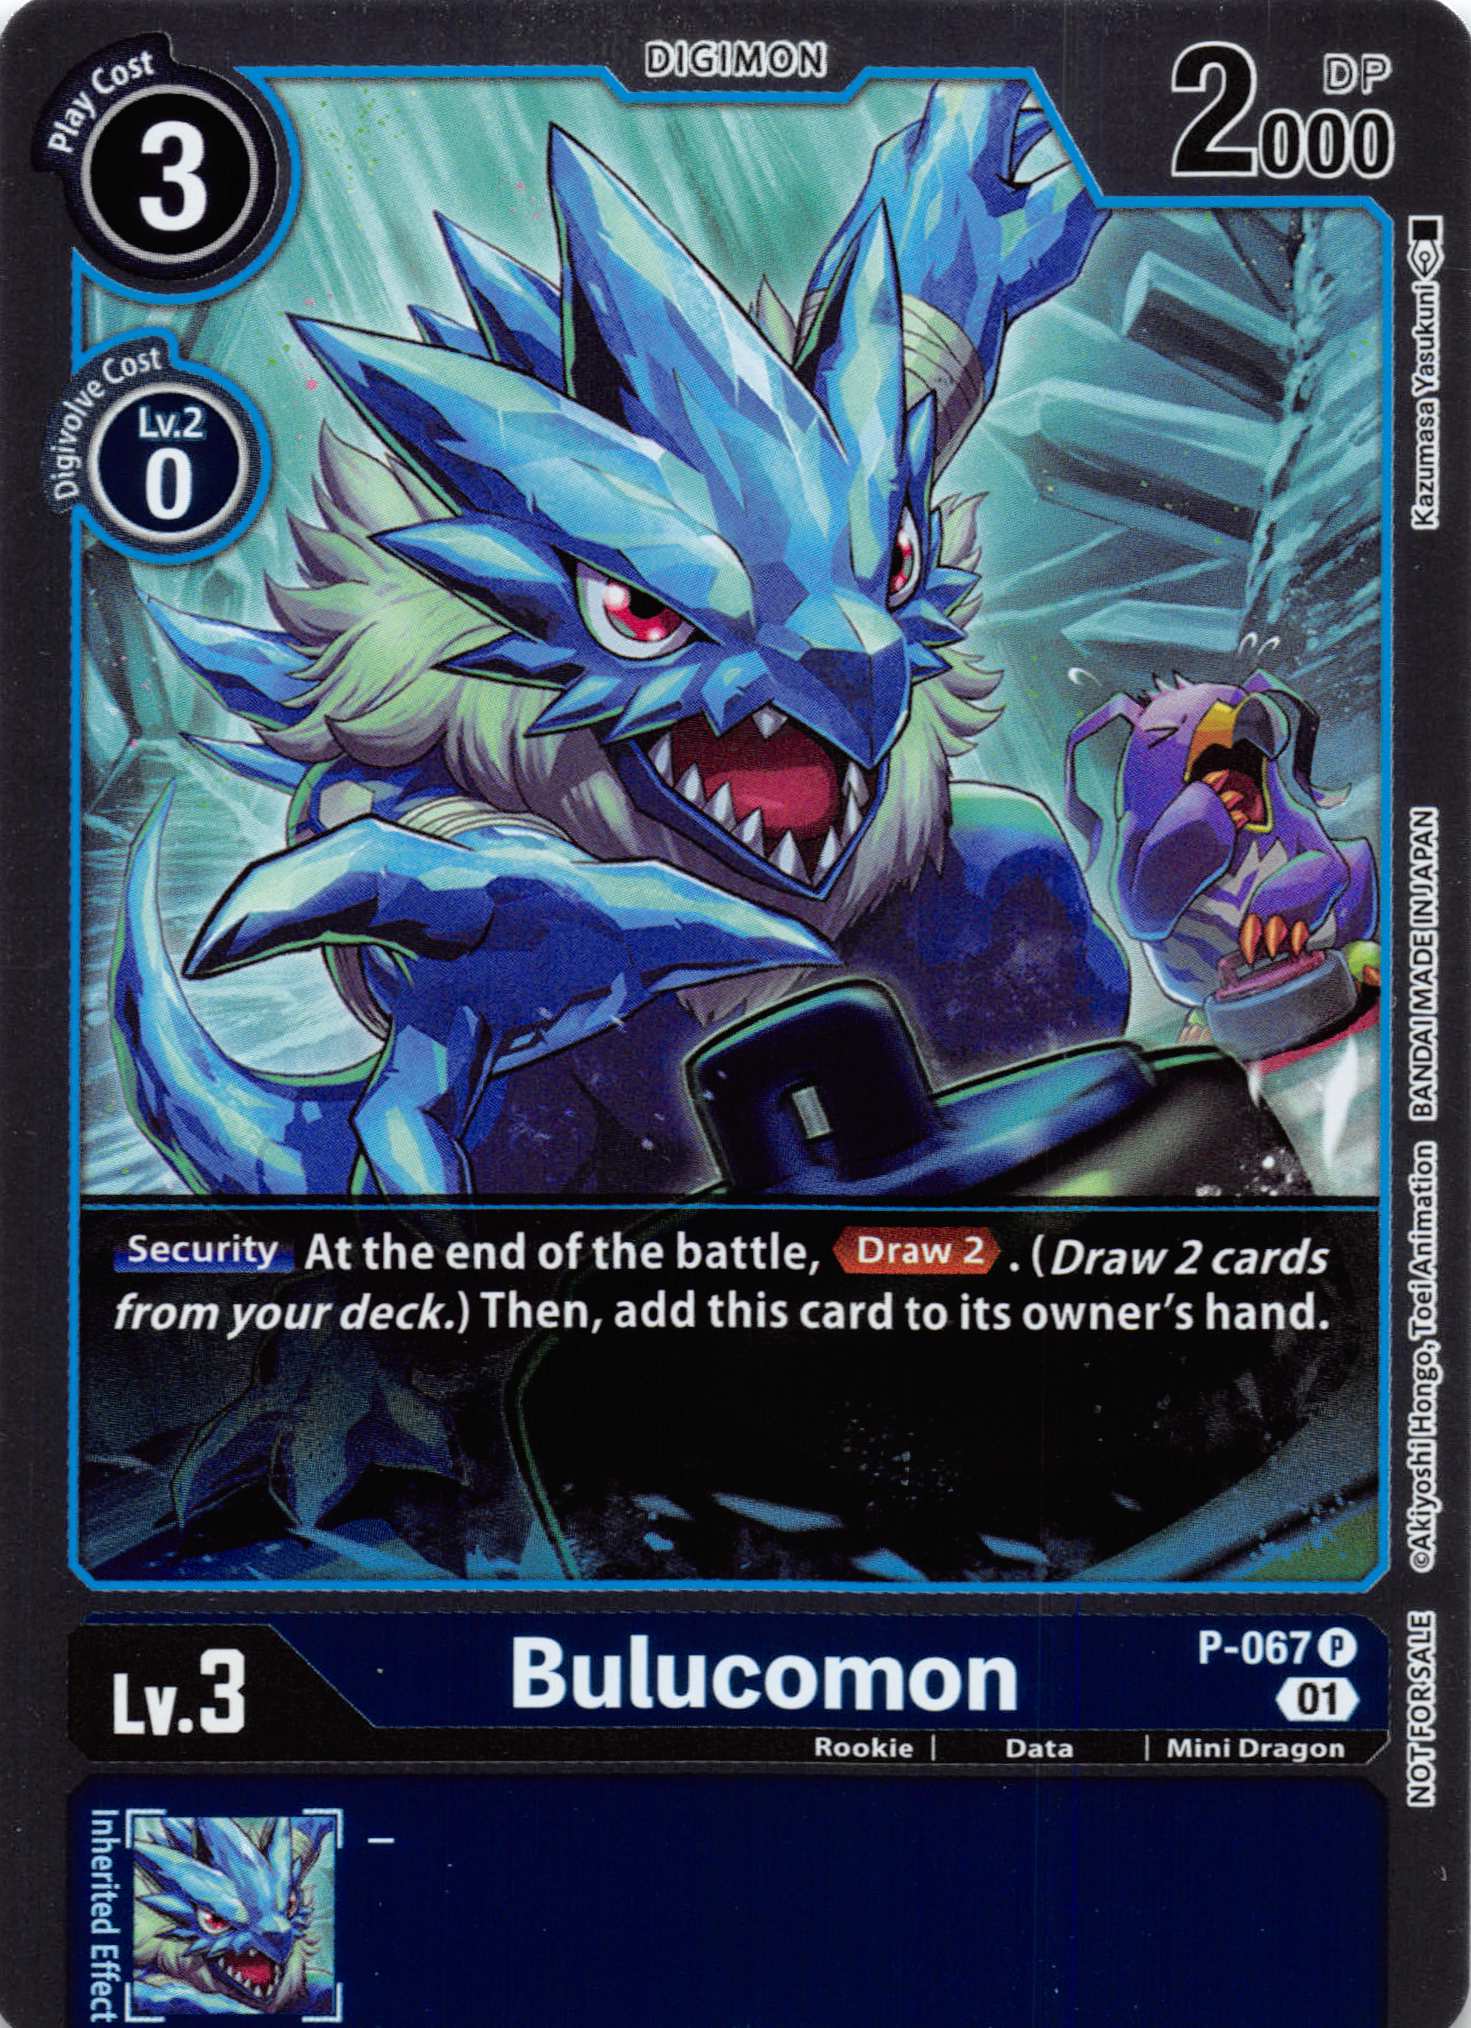 Bulucomon - P-067 (Limited Card Pack) [P-067] [Digimon Promotion Cards] Foil